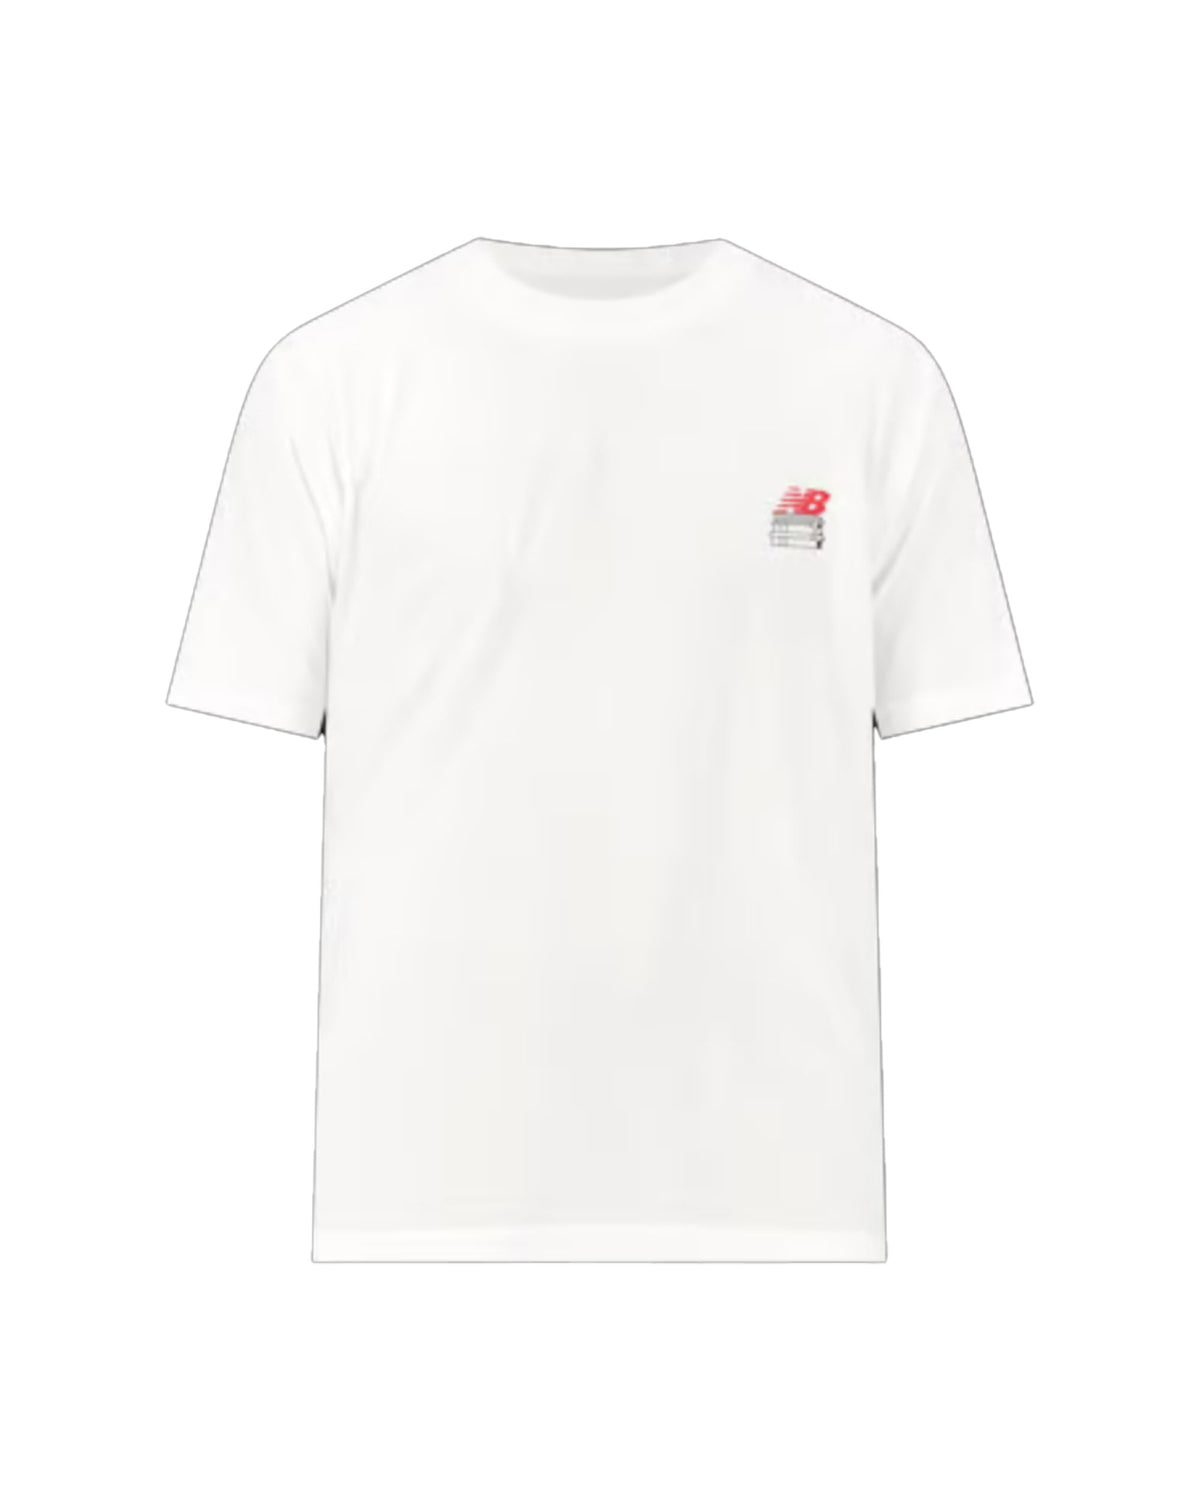 T-Shirt Uomo New Balance Bookshelf Bianco